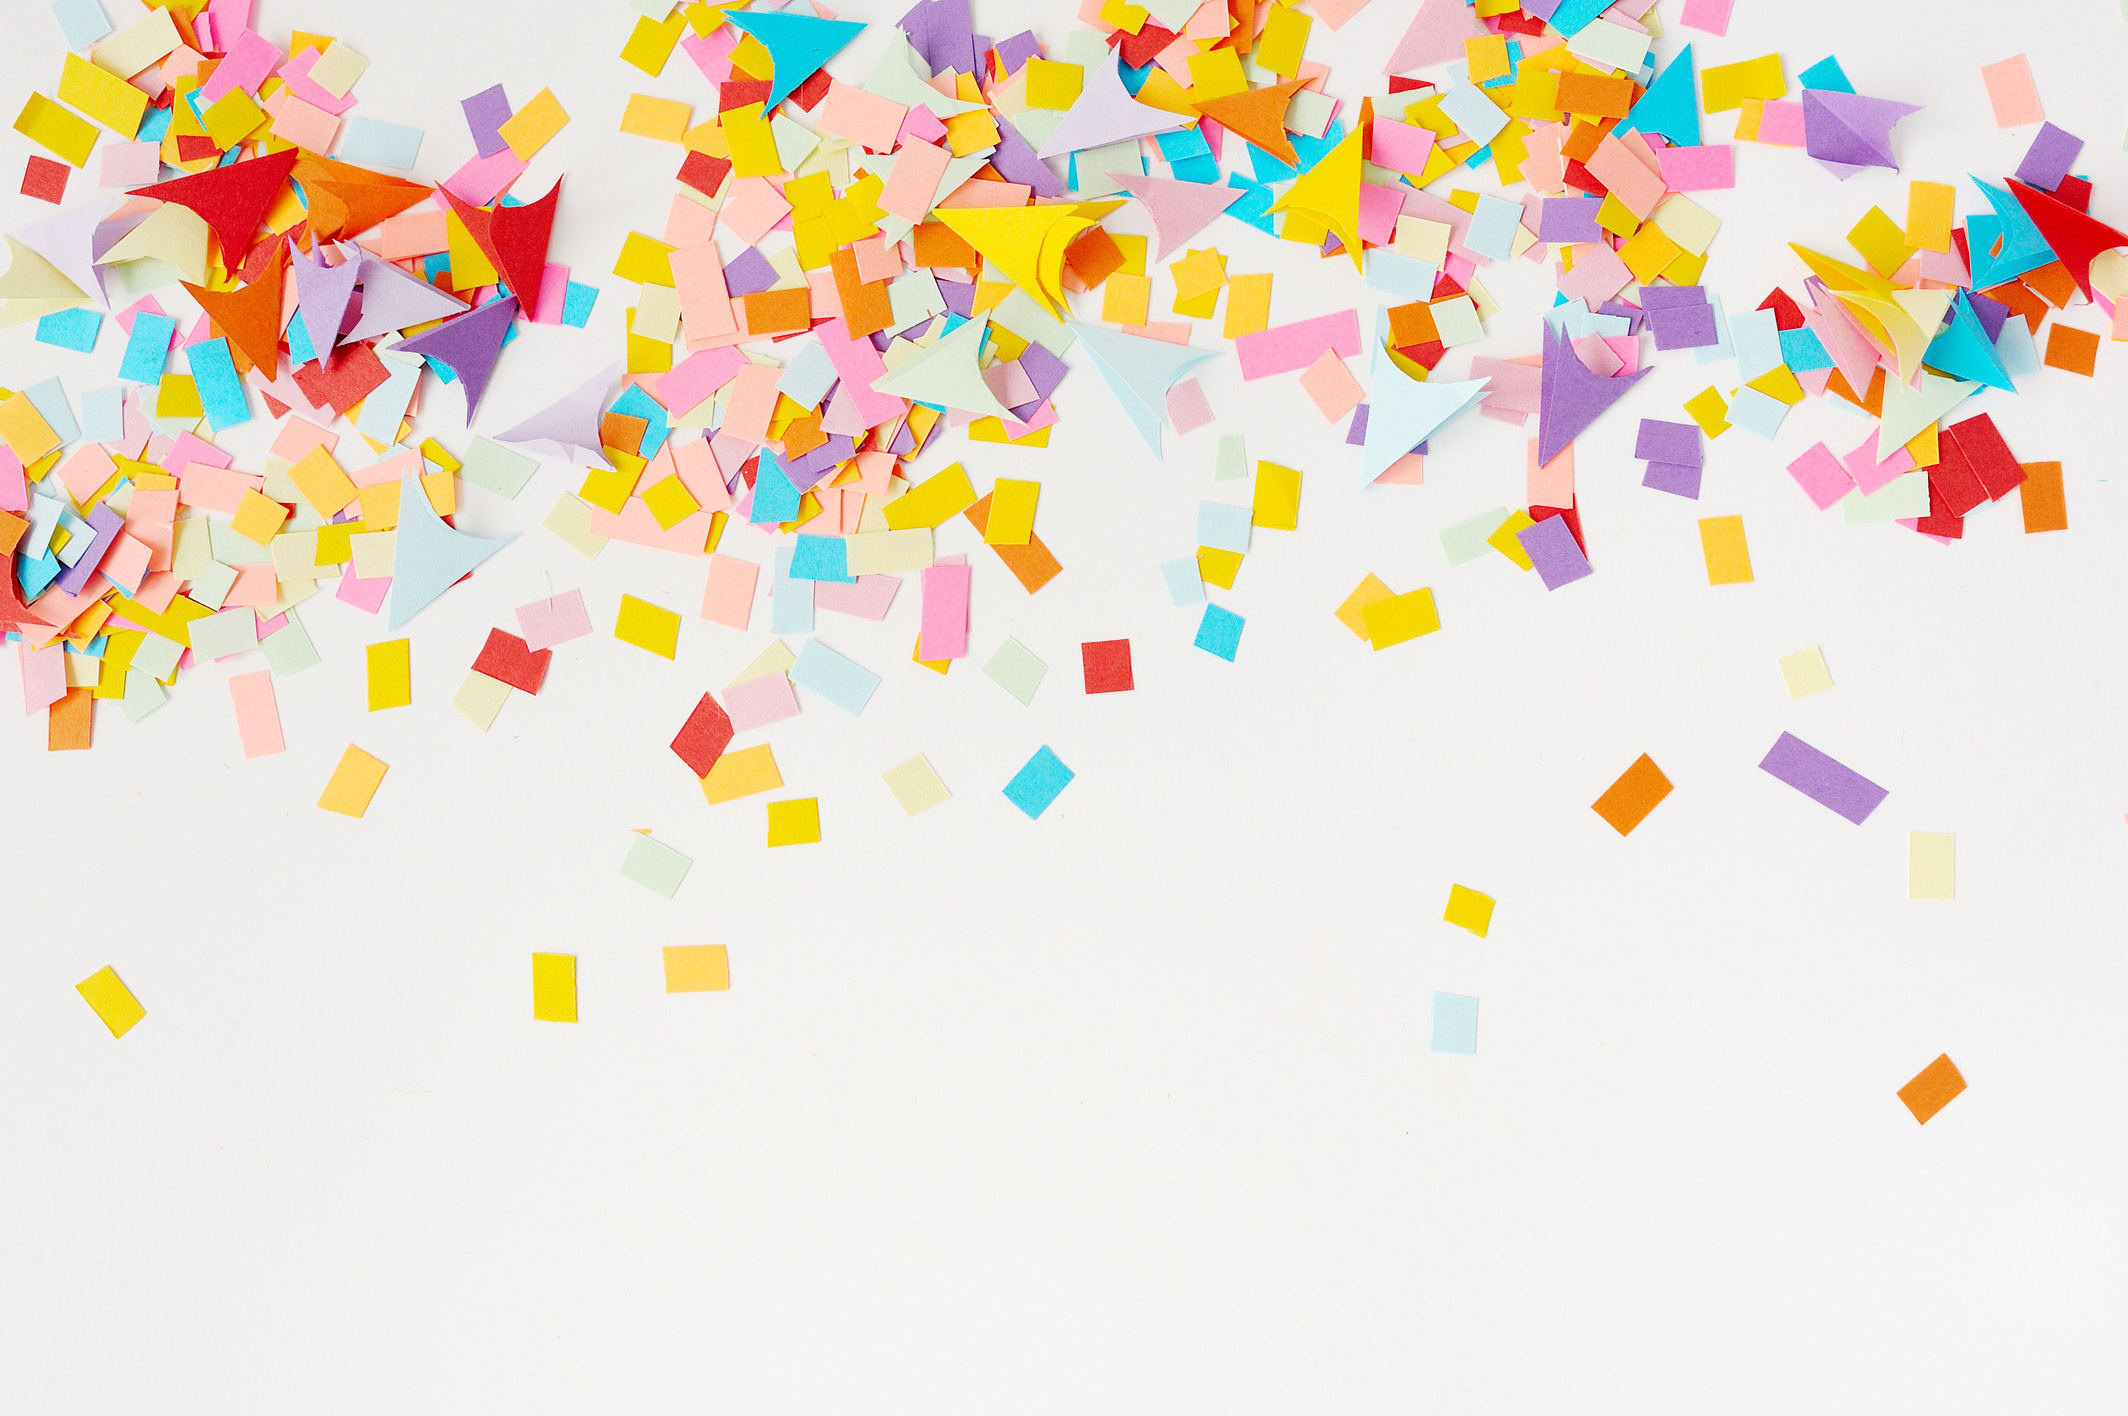 Multi-colored confetti from paper